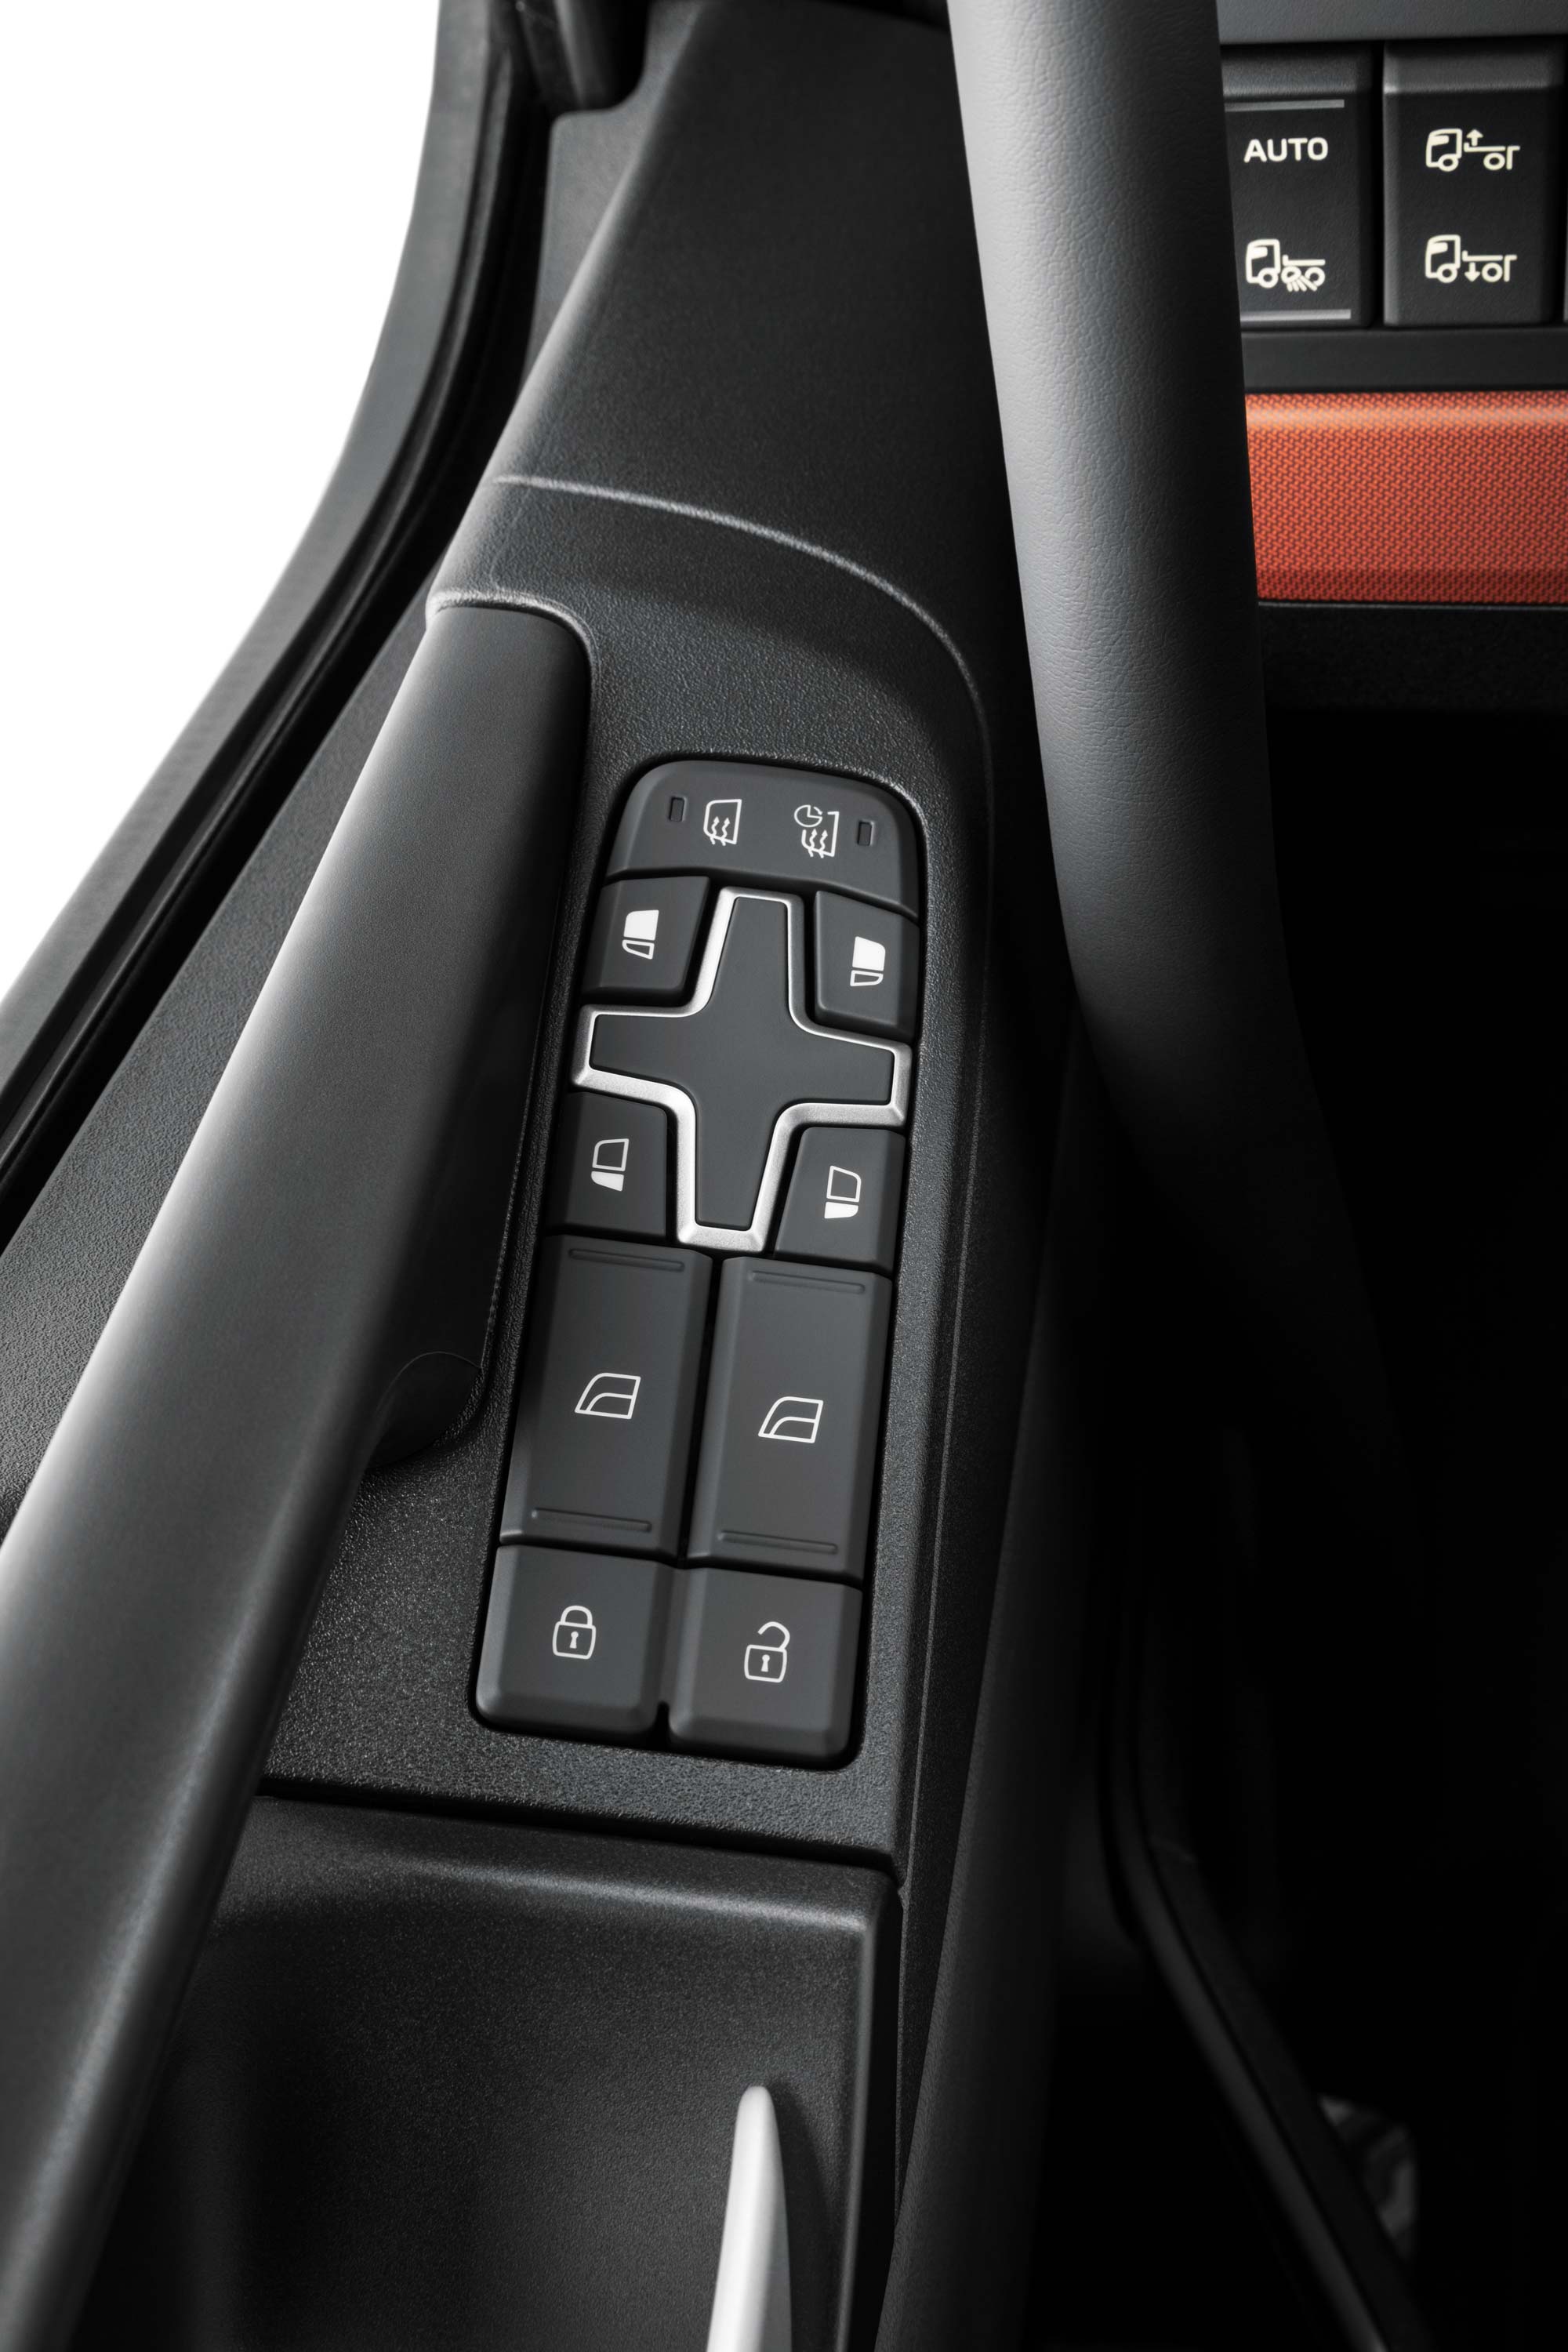 Comenzi integrate în interiorul autocamionului Volvo FH16 pentru a facilita accesul.